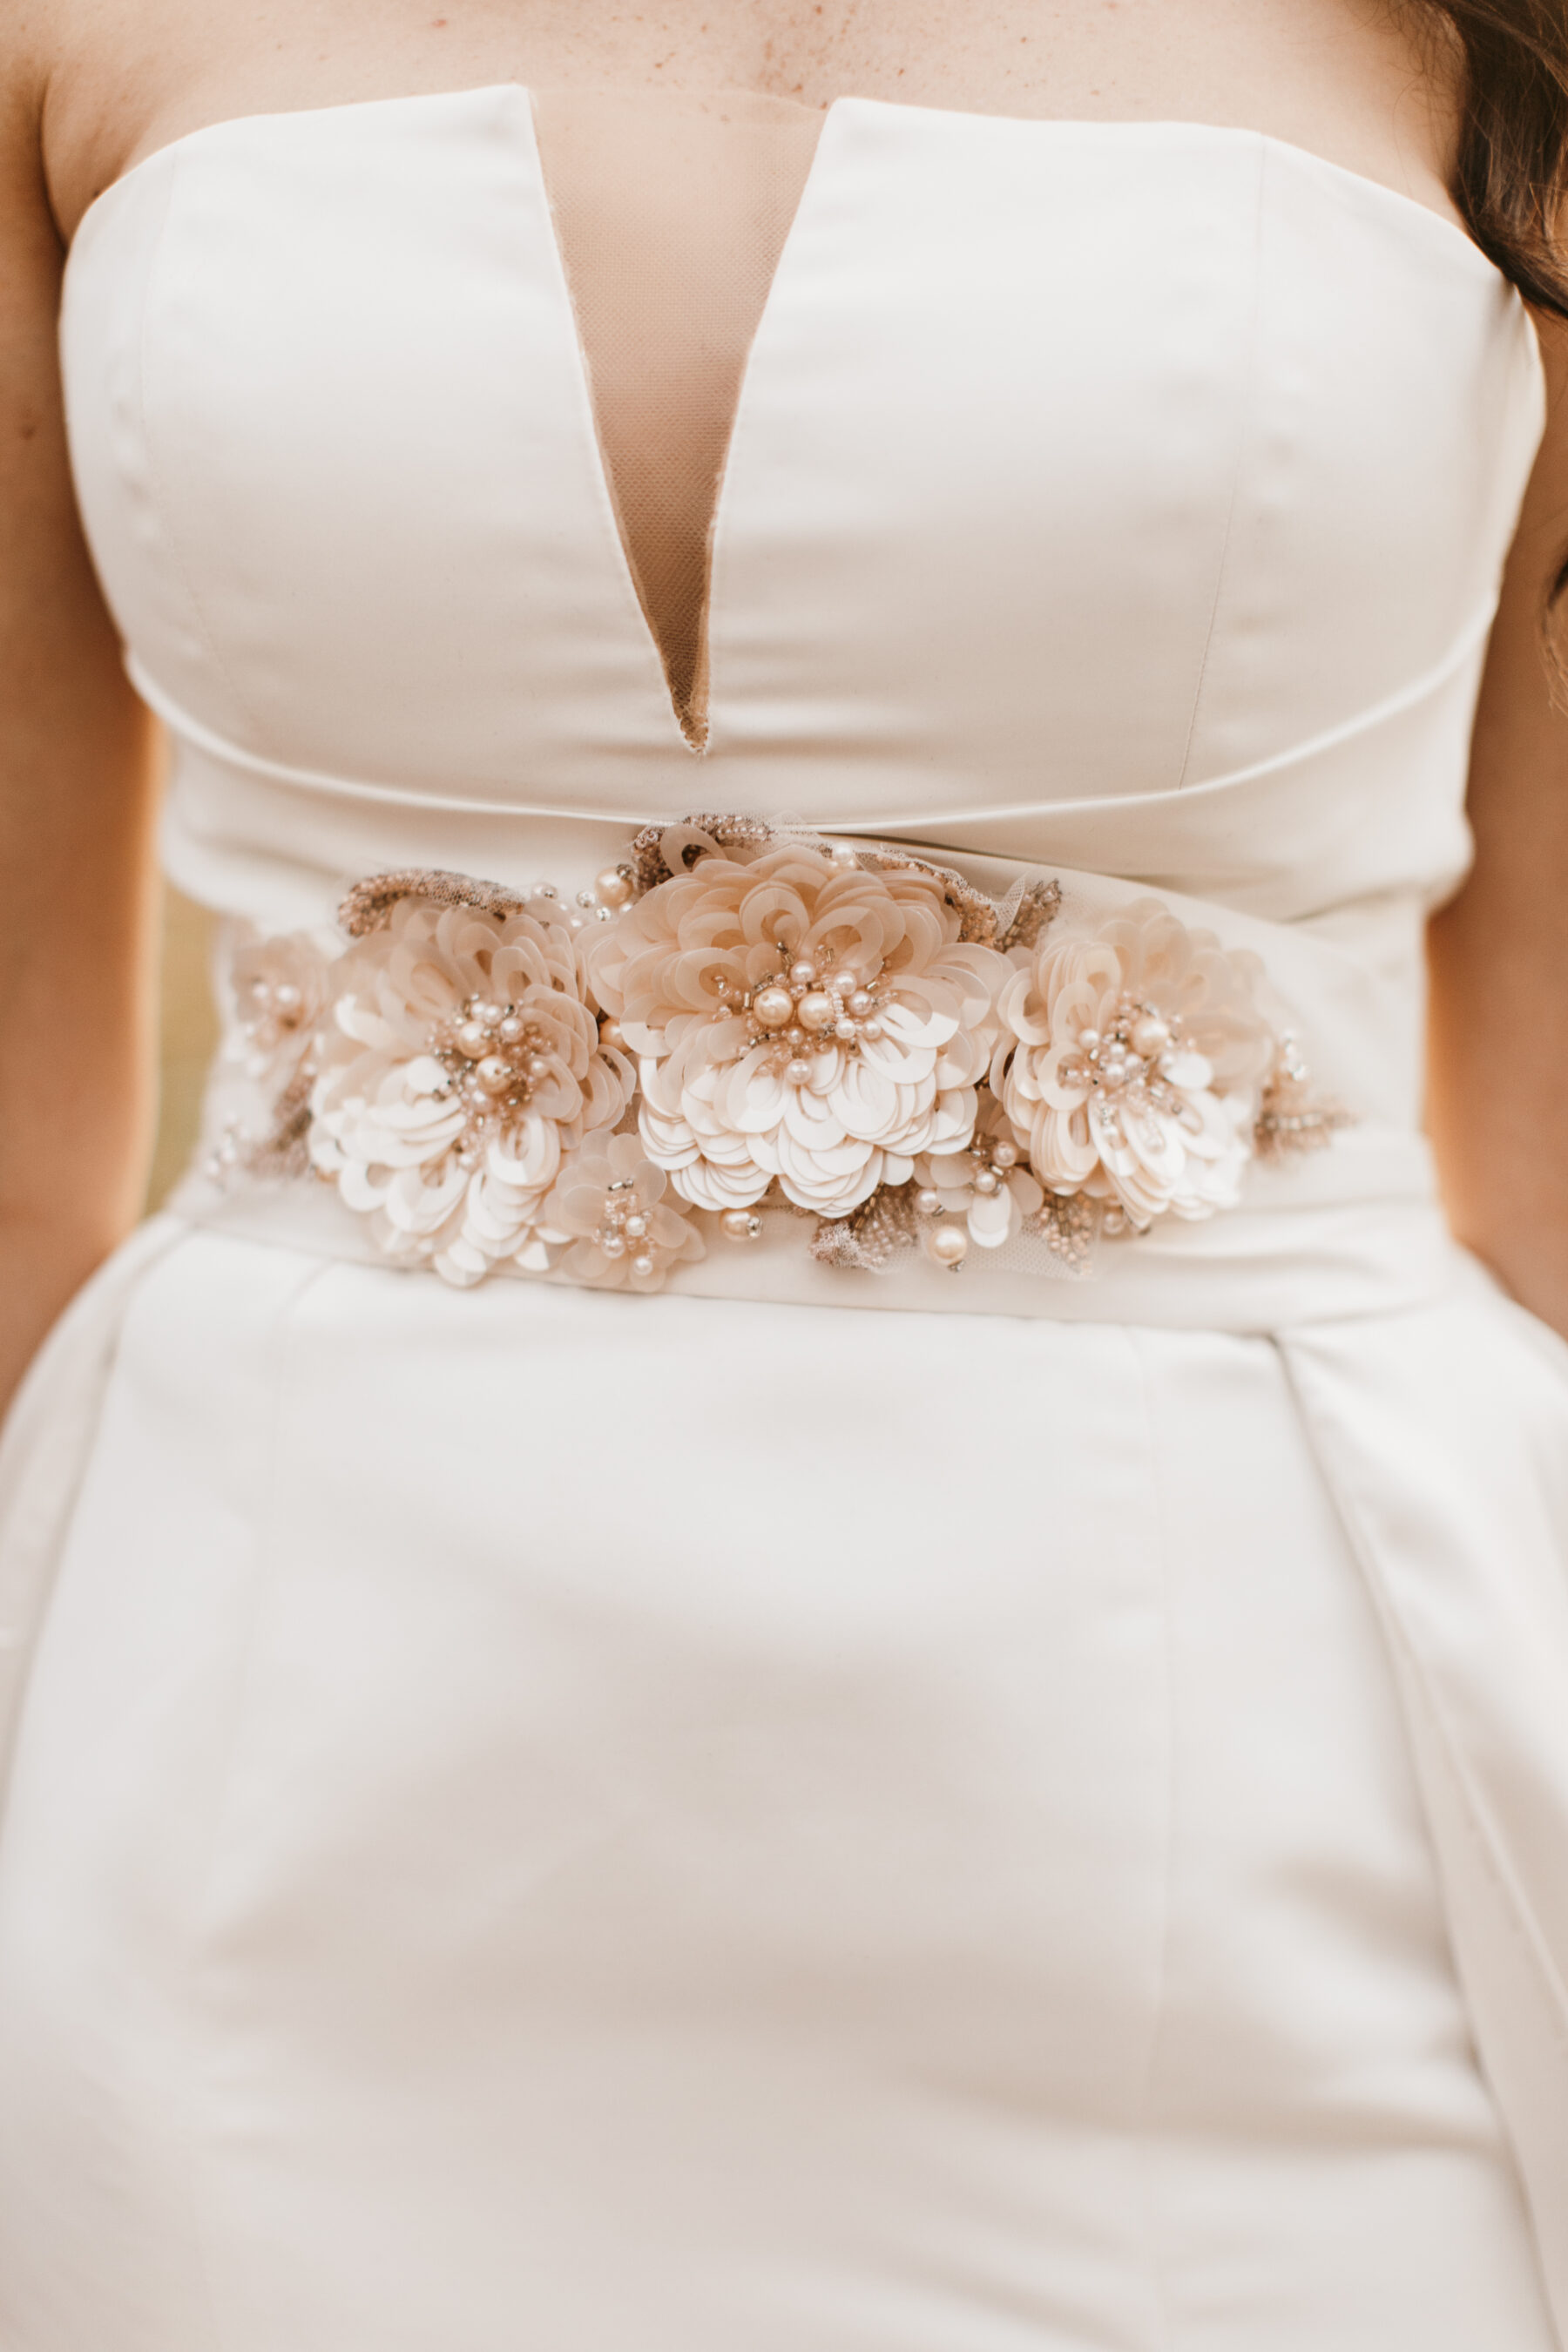 Flower wedding dress belt | Nashville Bride Guide